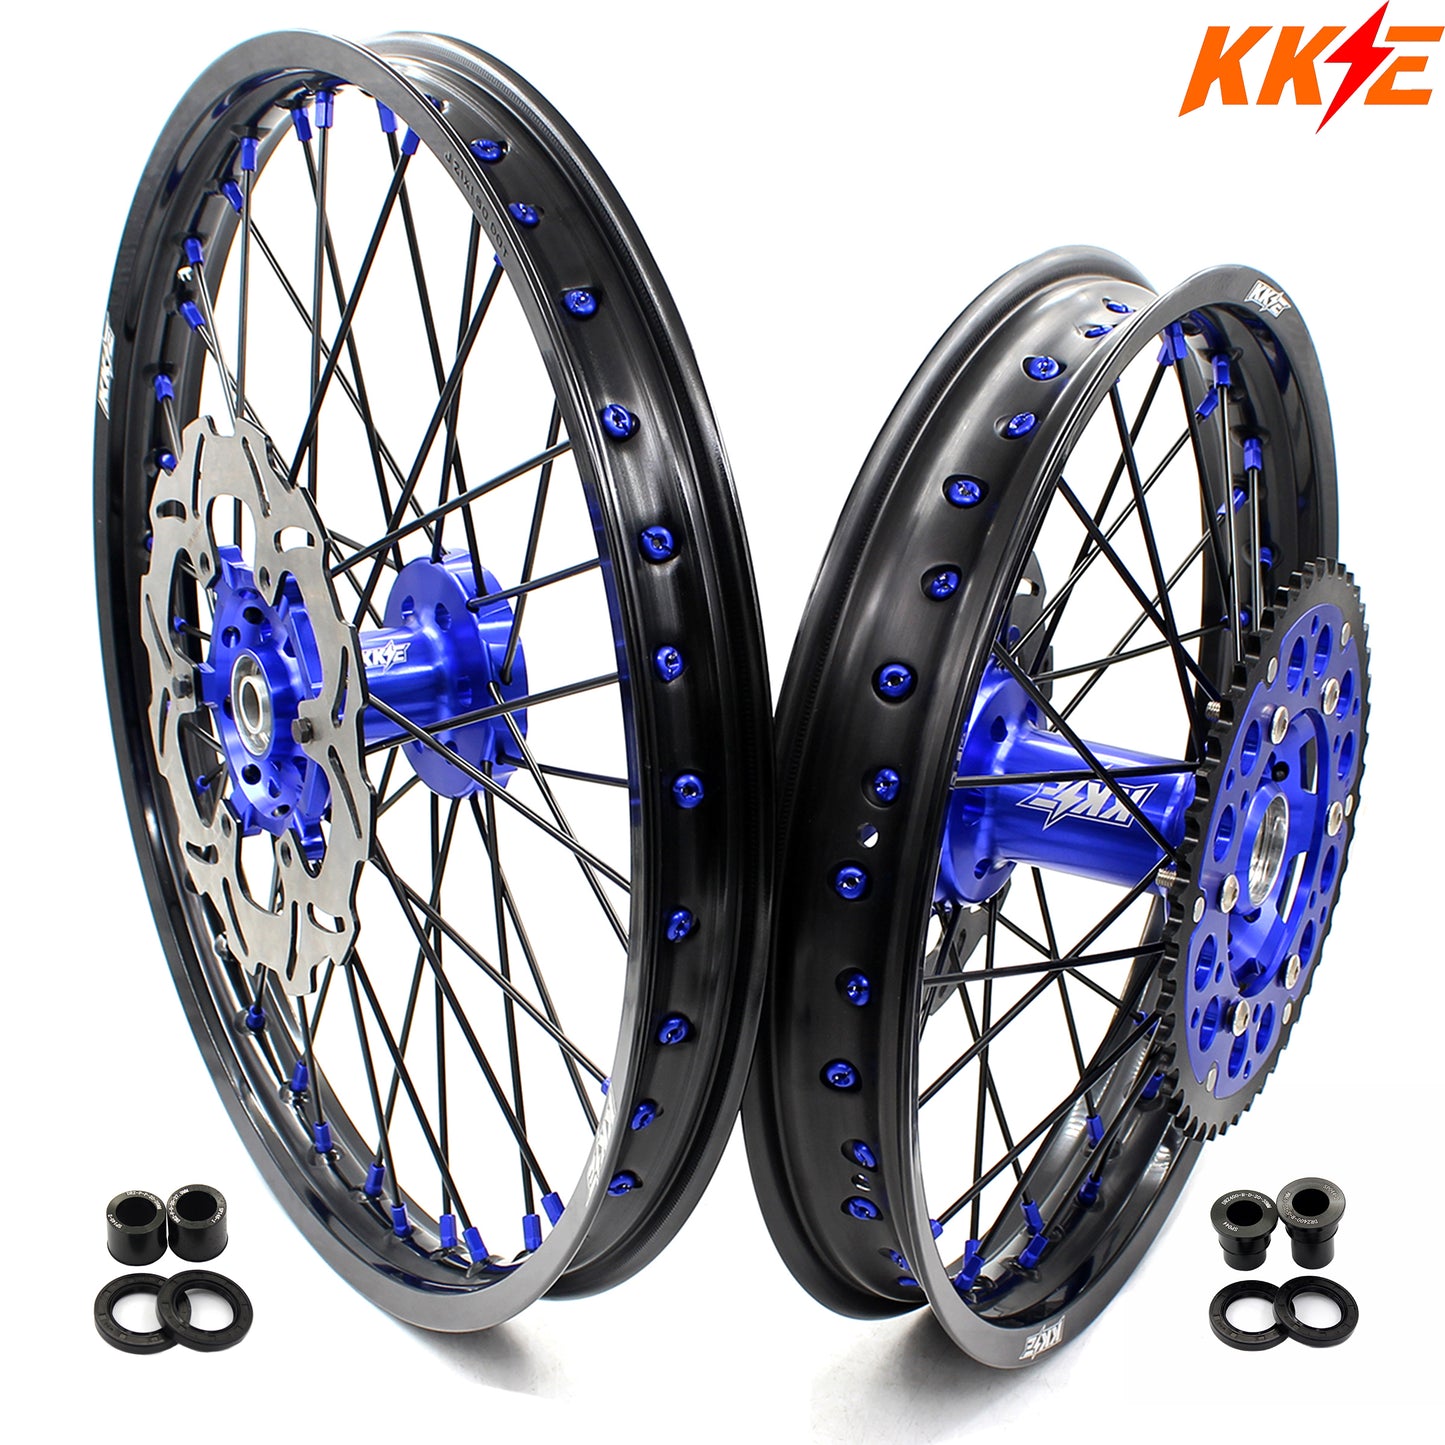 KKE 21in. & 18in. Enduro Dirtbike Wheels For SUZUKI DRZ400 DRZ400E DRZ400S